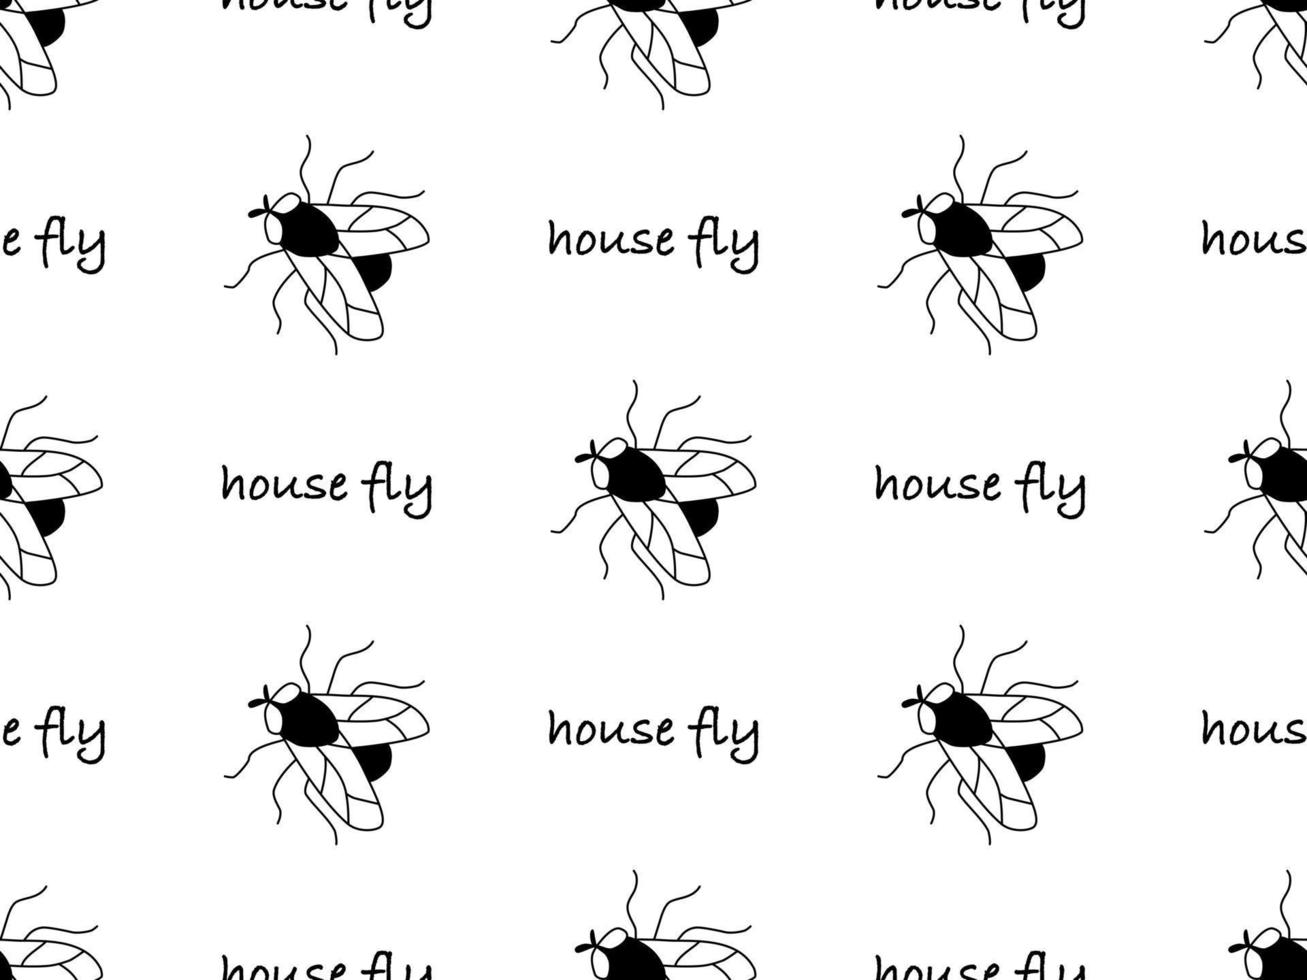 husfluga tecknad serie karaktär sömlös mönster på vit bakgrund vektor